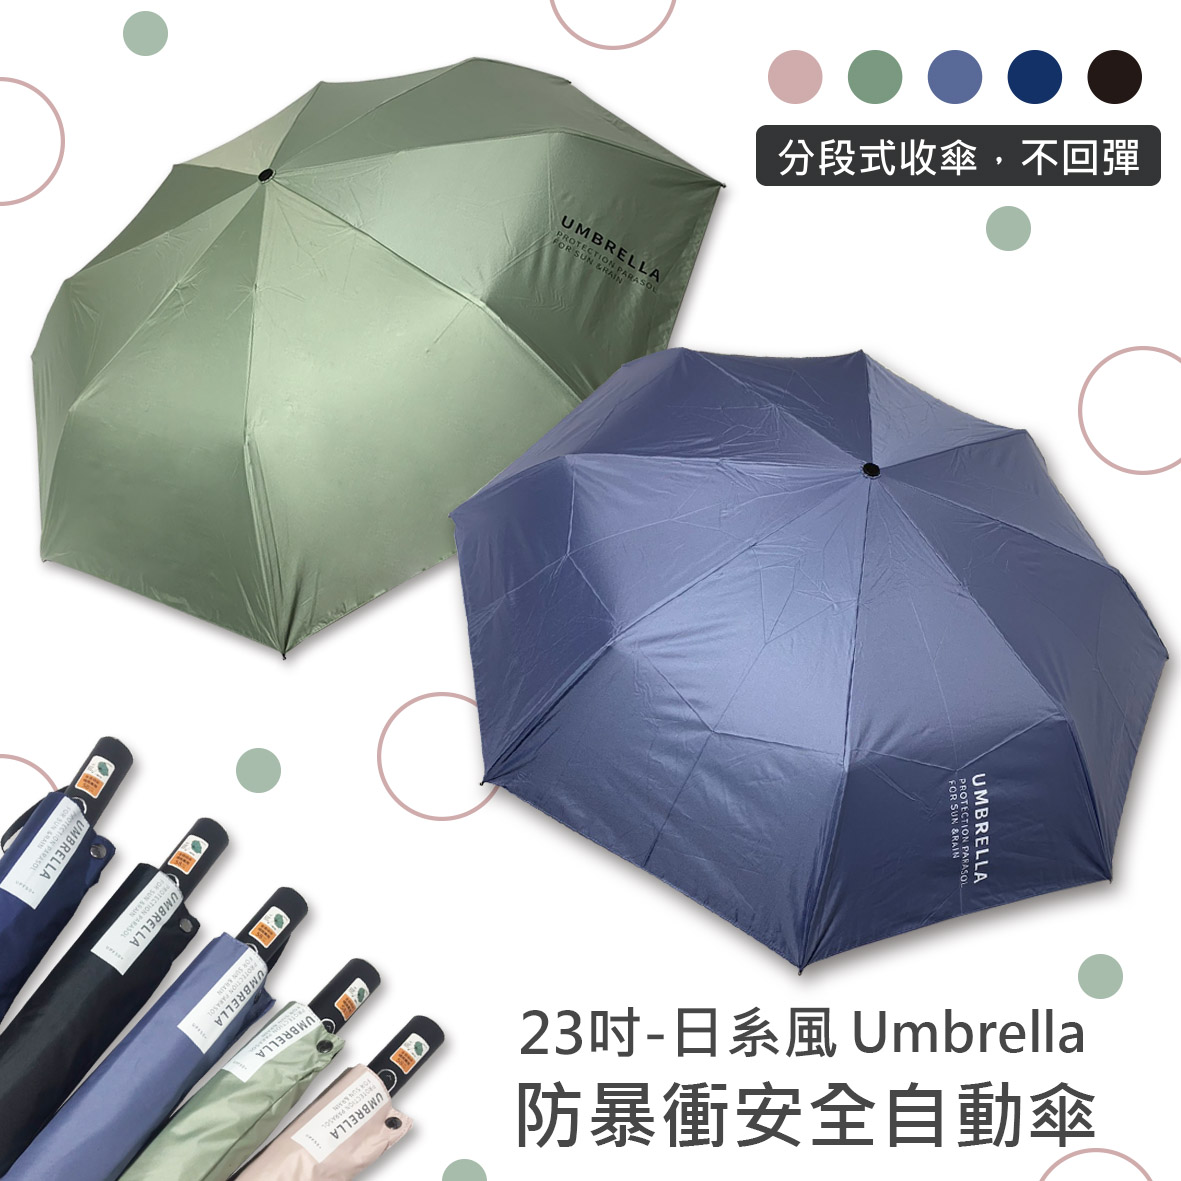 分段式收傘,不回彈，23吋-日系風 Umbrella，防暴衝安全自動傘。